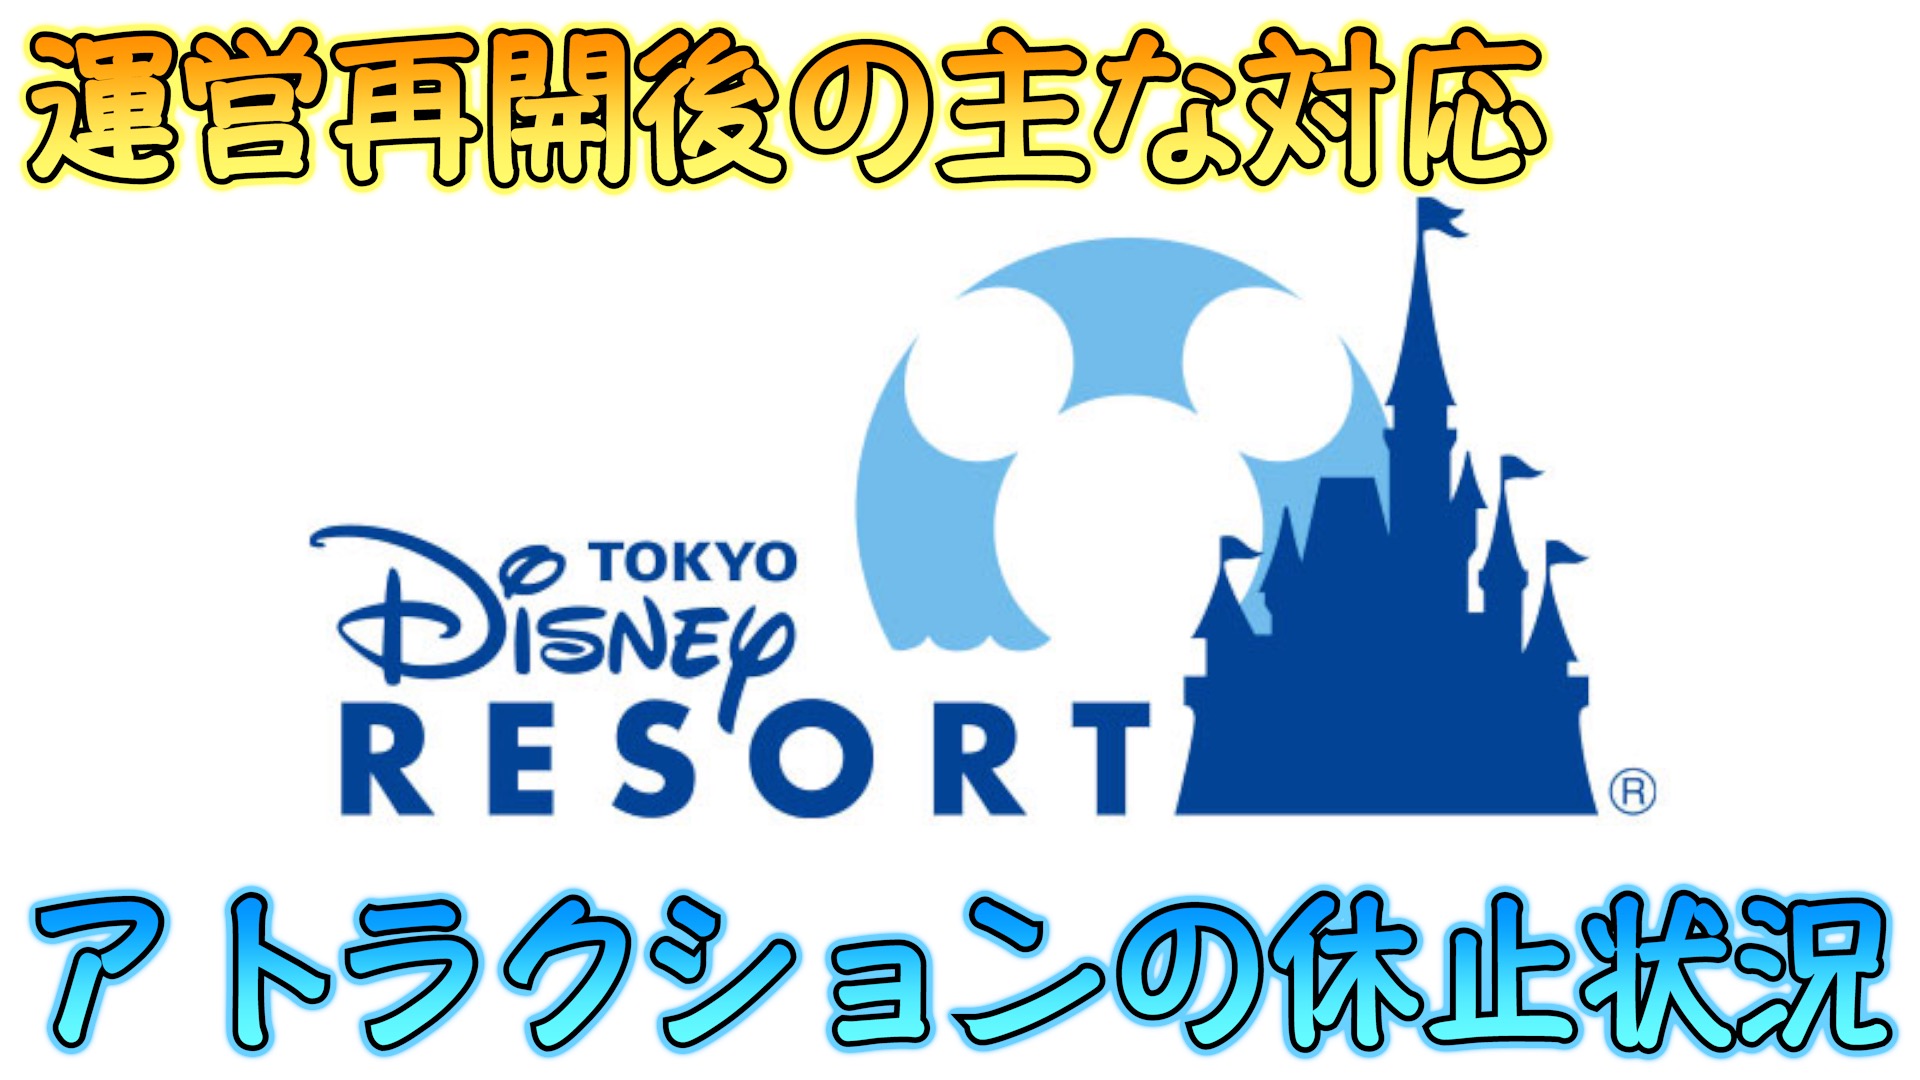 東京ディズニーランドと東京ディズニーシーのパーク再開後のアトラクションの主な対応や休止状況まとめ 東京ディズニーリゾート Disney Play Time